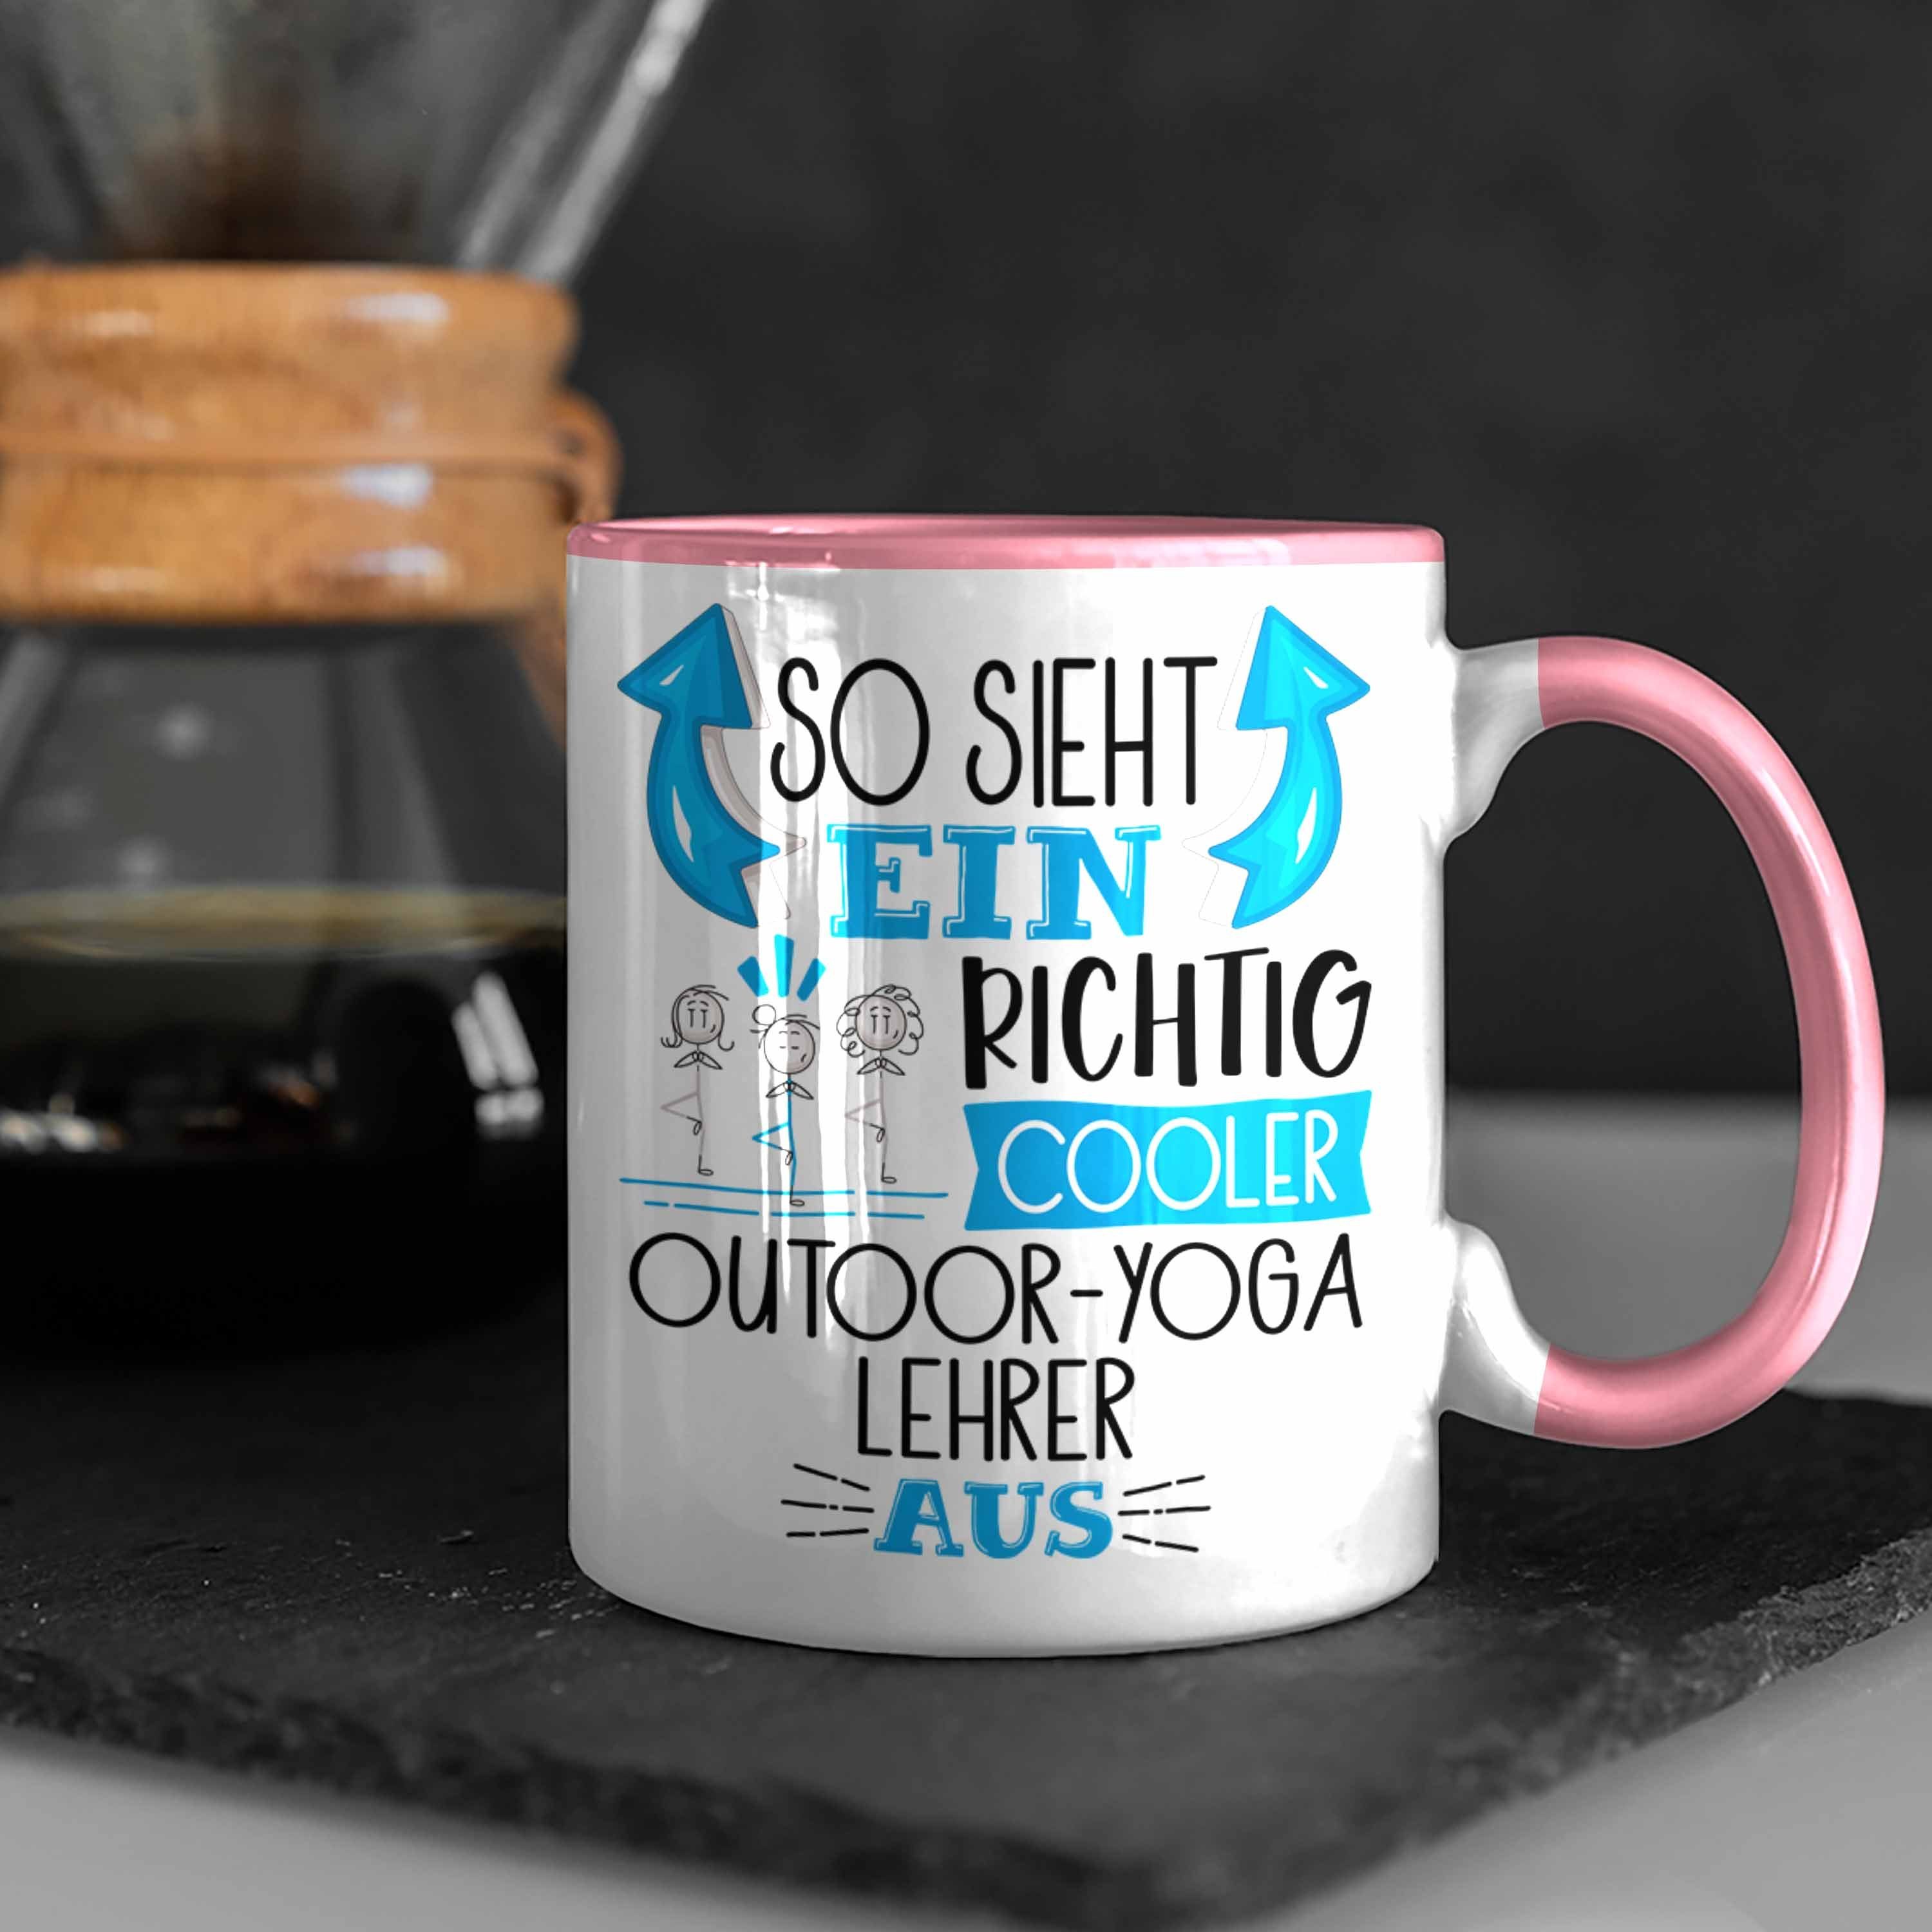 Trendation Tasse Cooler Richtig Ein So Tasse Geschenk Sieht Outdoor-Yoga-Lehrer Aus für Rosa